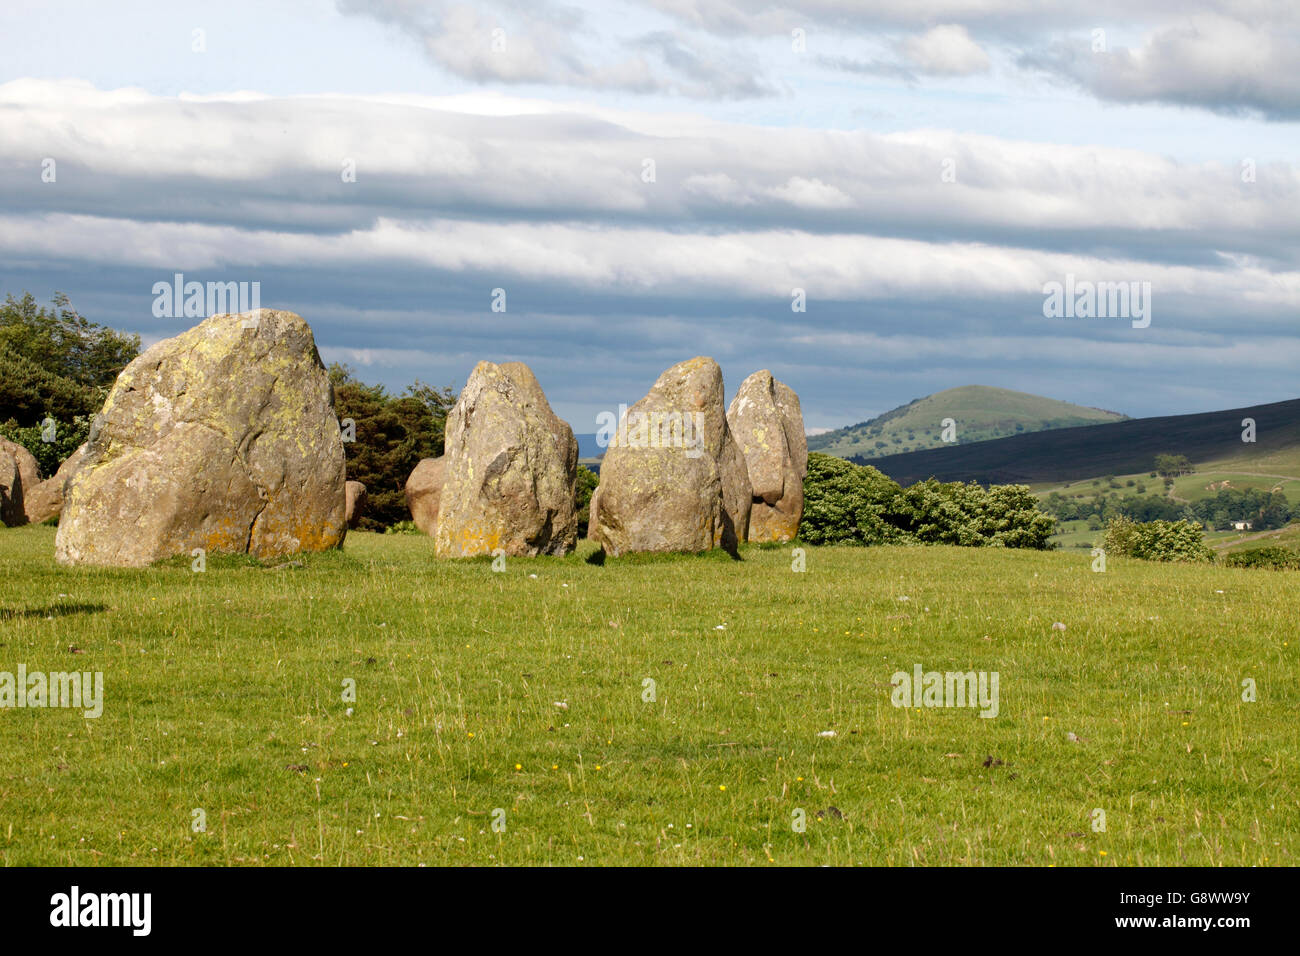 Cercle de pierres de Castlerigg Stone Circle, Lake District, Cumbria, Angleterre Lakeland UK. Construit par les agriculteurs à l'époque préhistorique. Banque D'Images